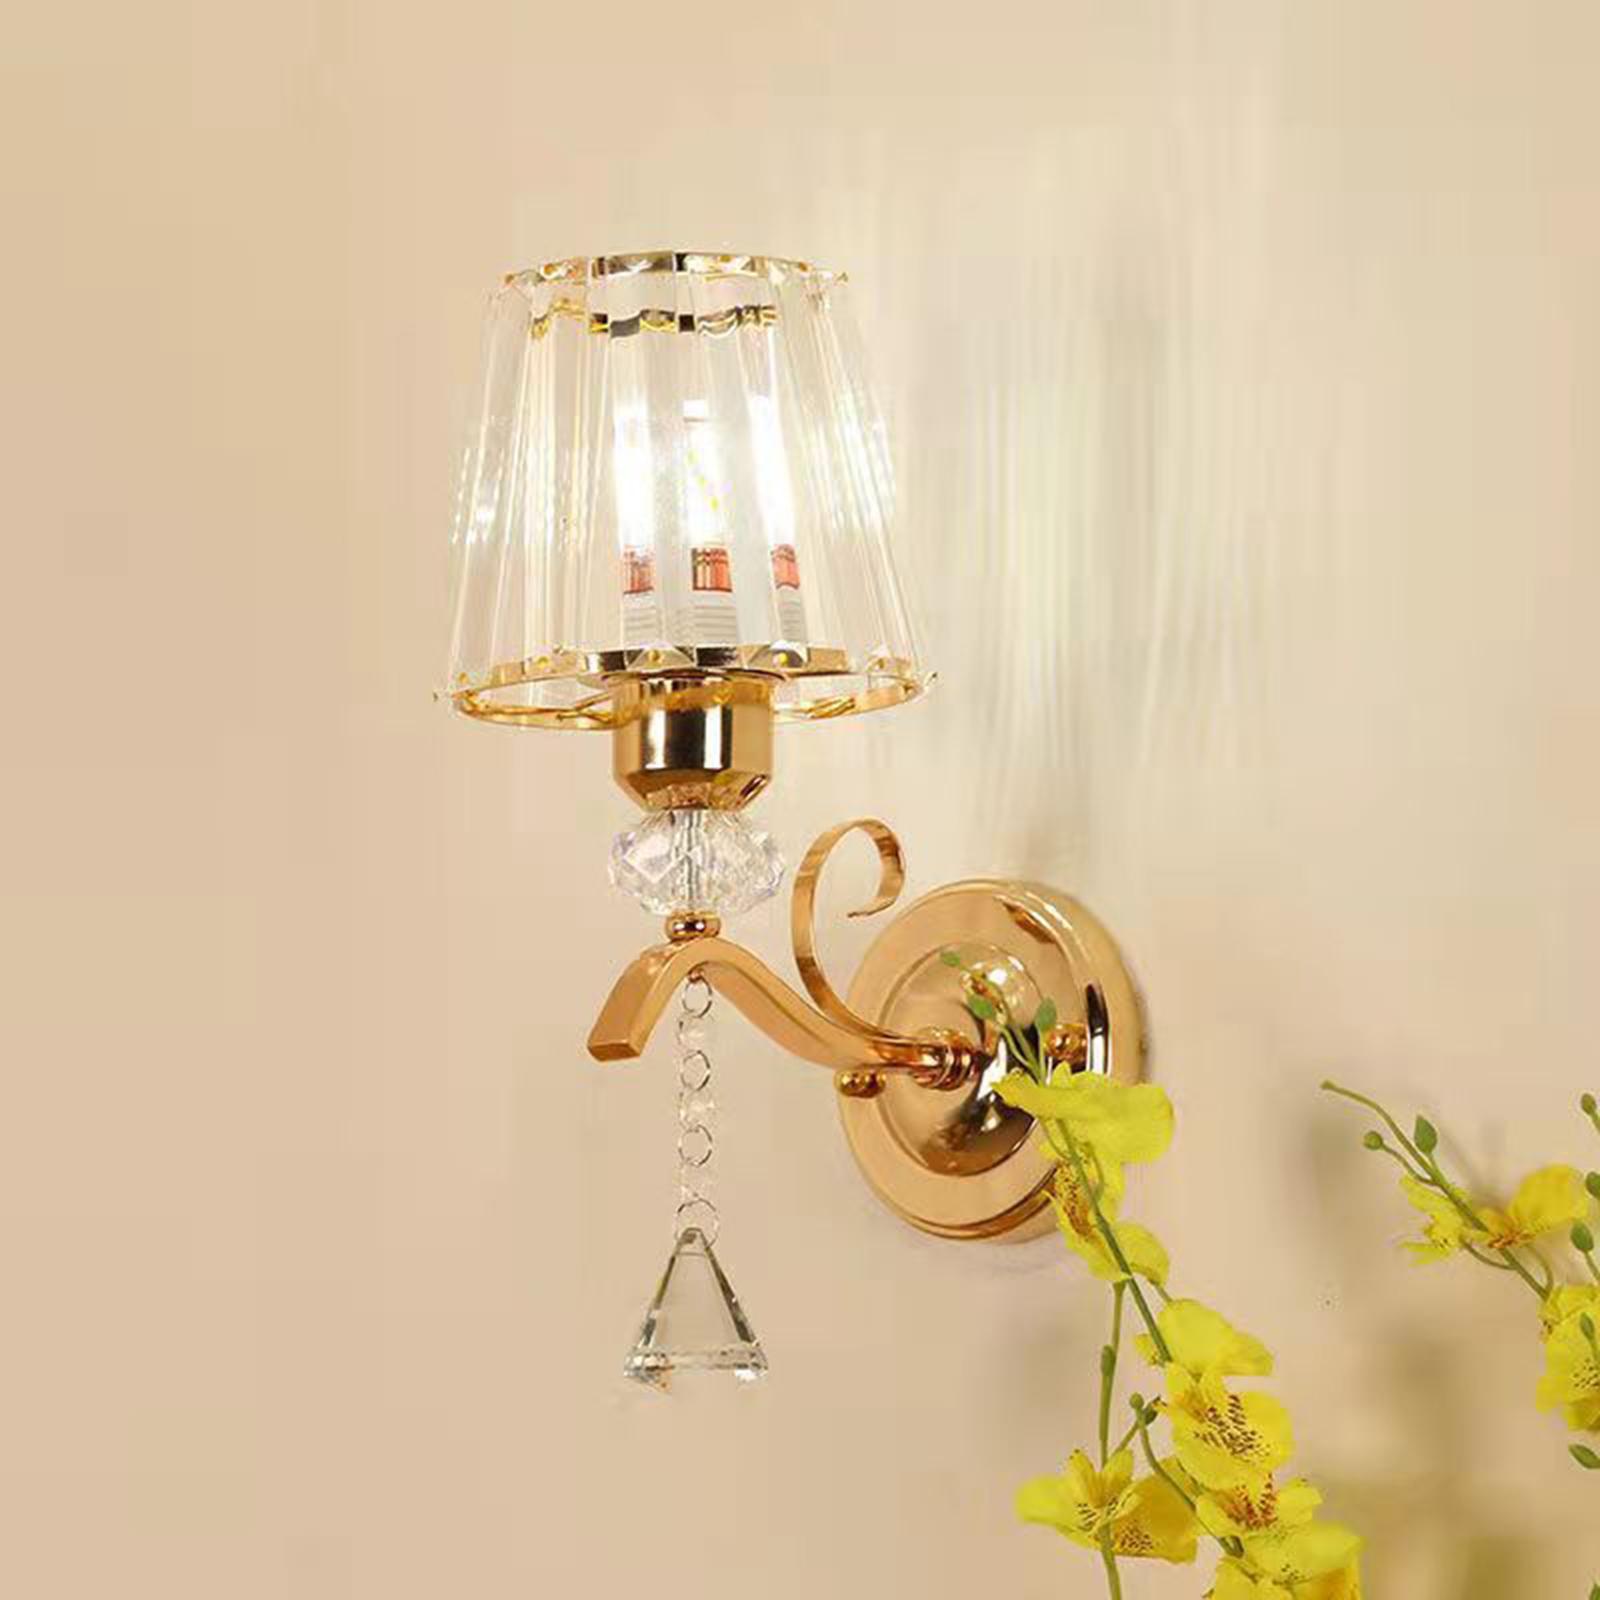 Modern LED Wall Light Sconce Light Fixtures Lighting Wall Mount Night Lamp for Corridor Bedroom Doorway Indoor Decoration